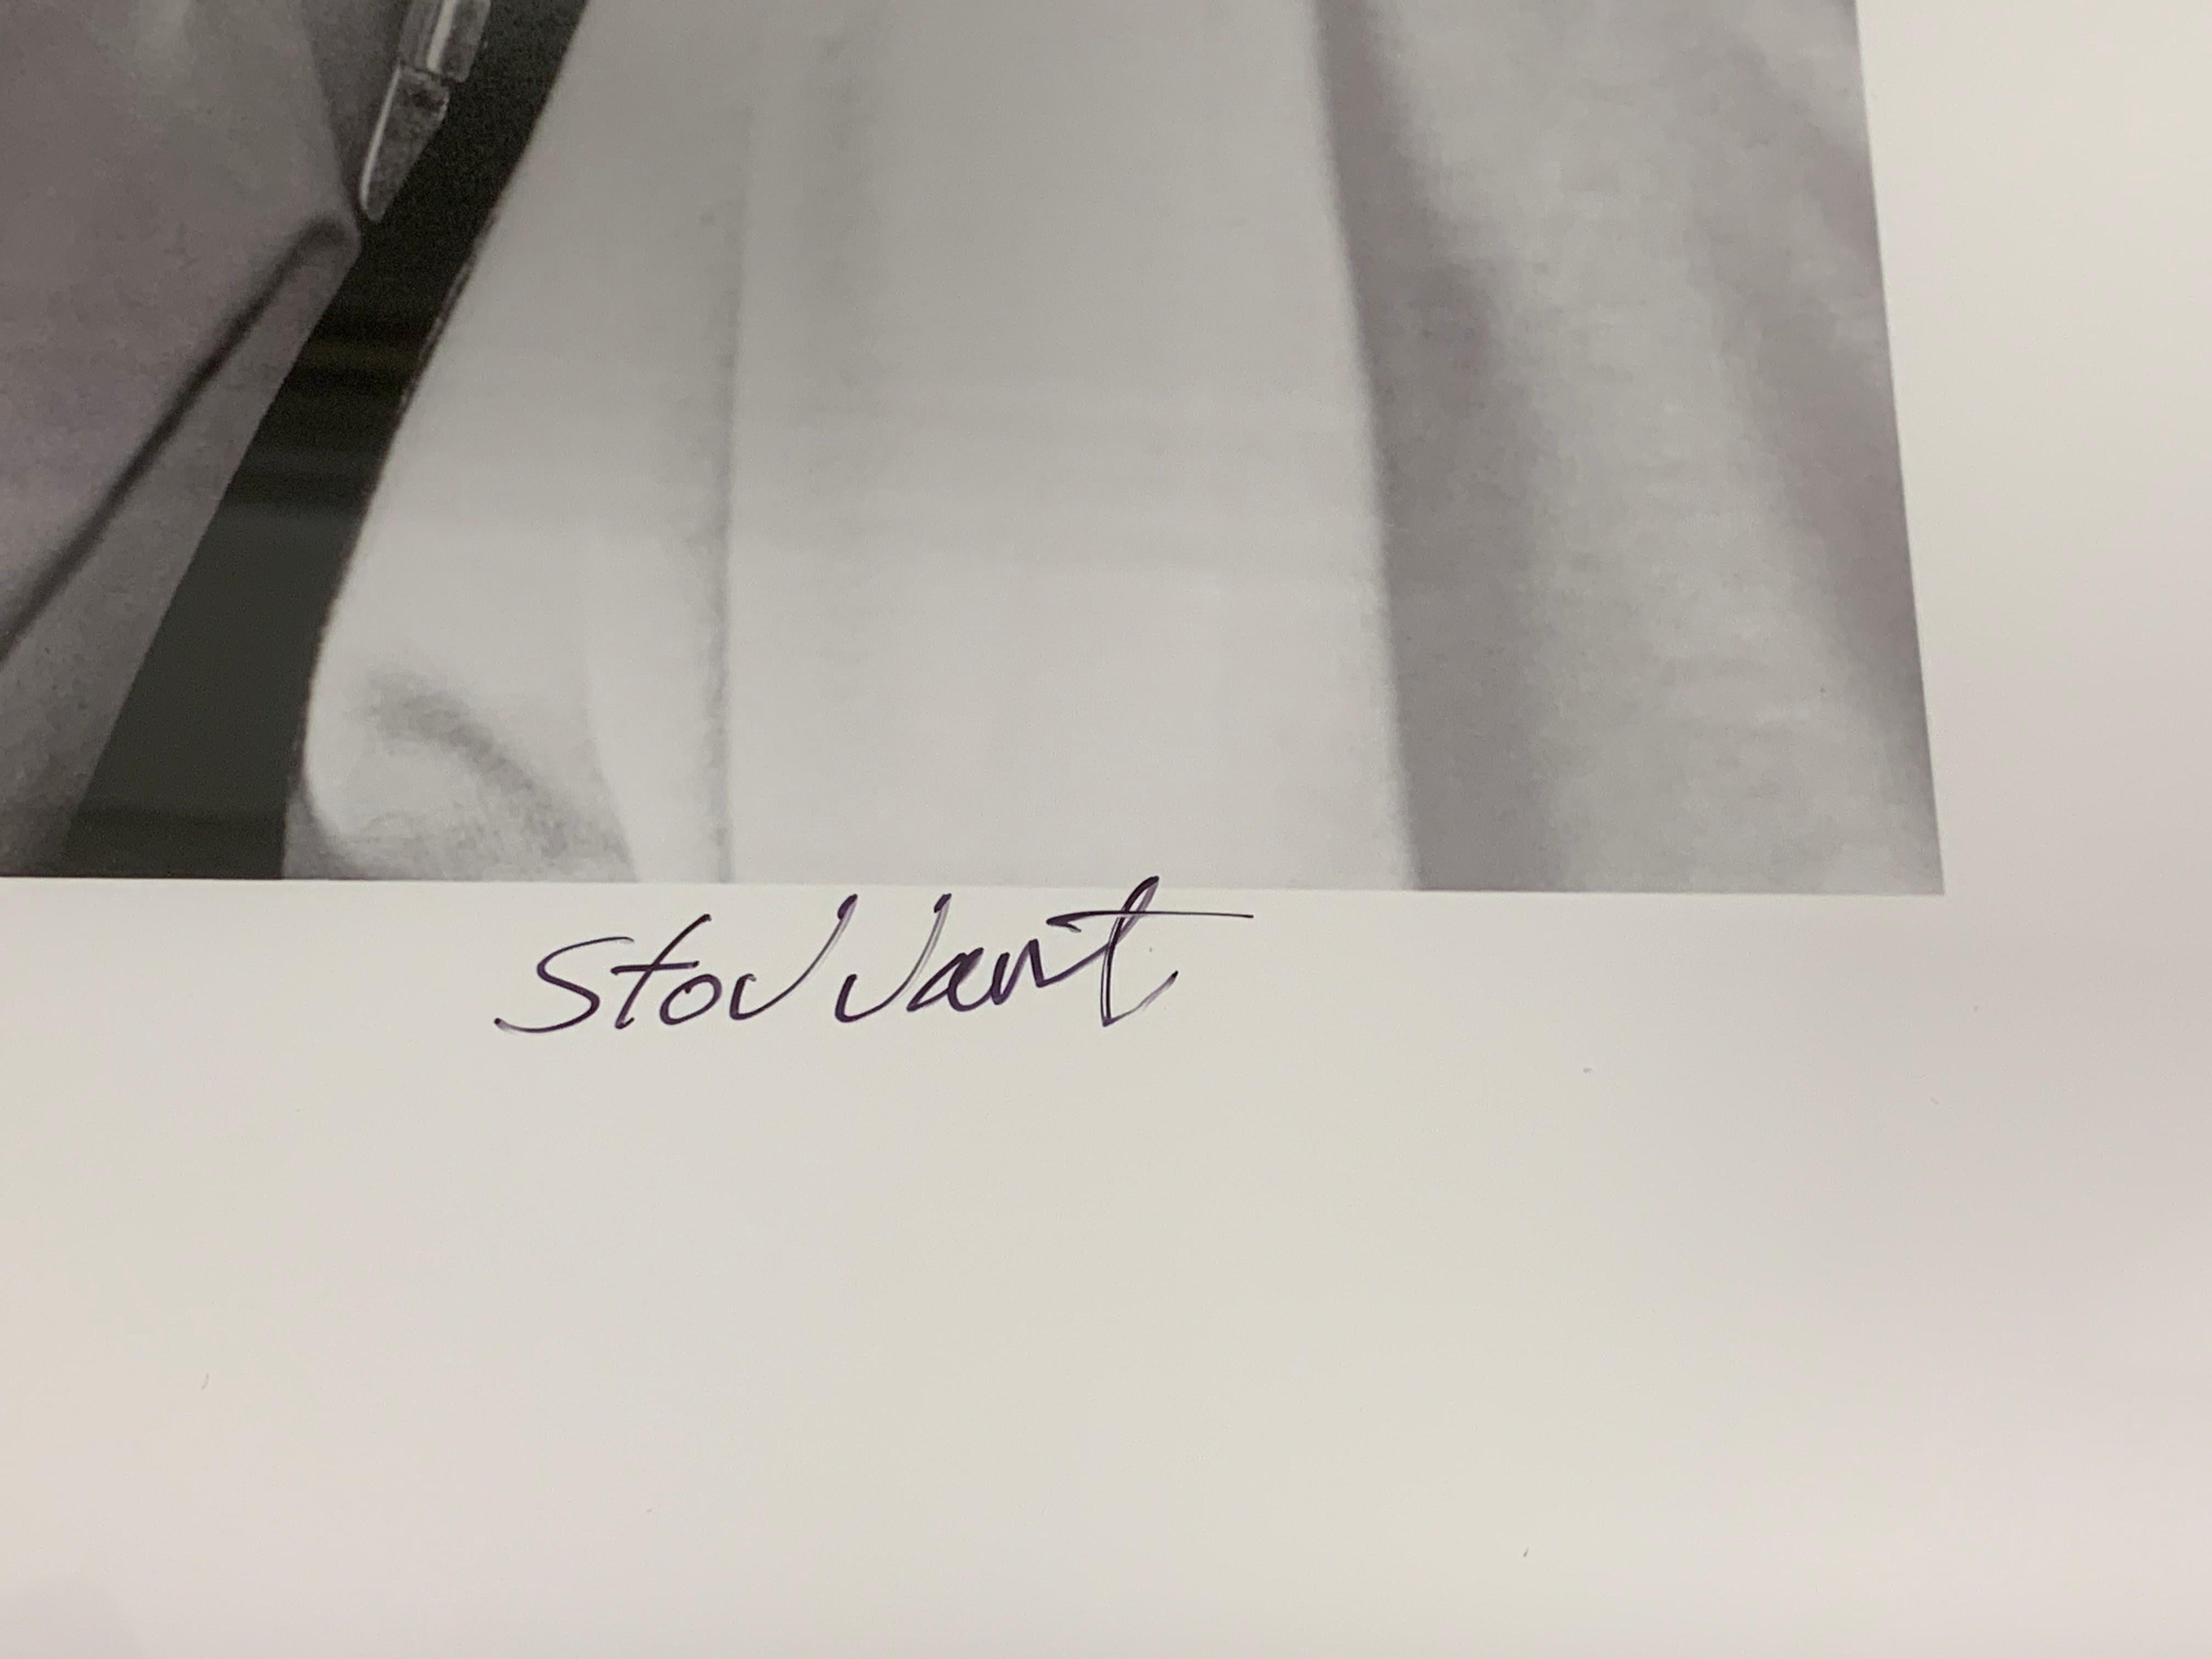 Daniel Craig Contact Sheet (édition limitée de 25 exemplaires) - 30x40 en imprimé Celebrity Print - Photograph de John Stoddart